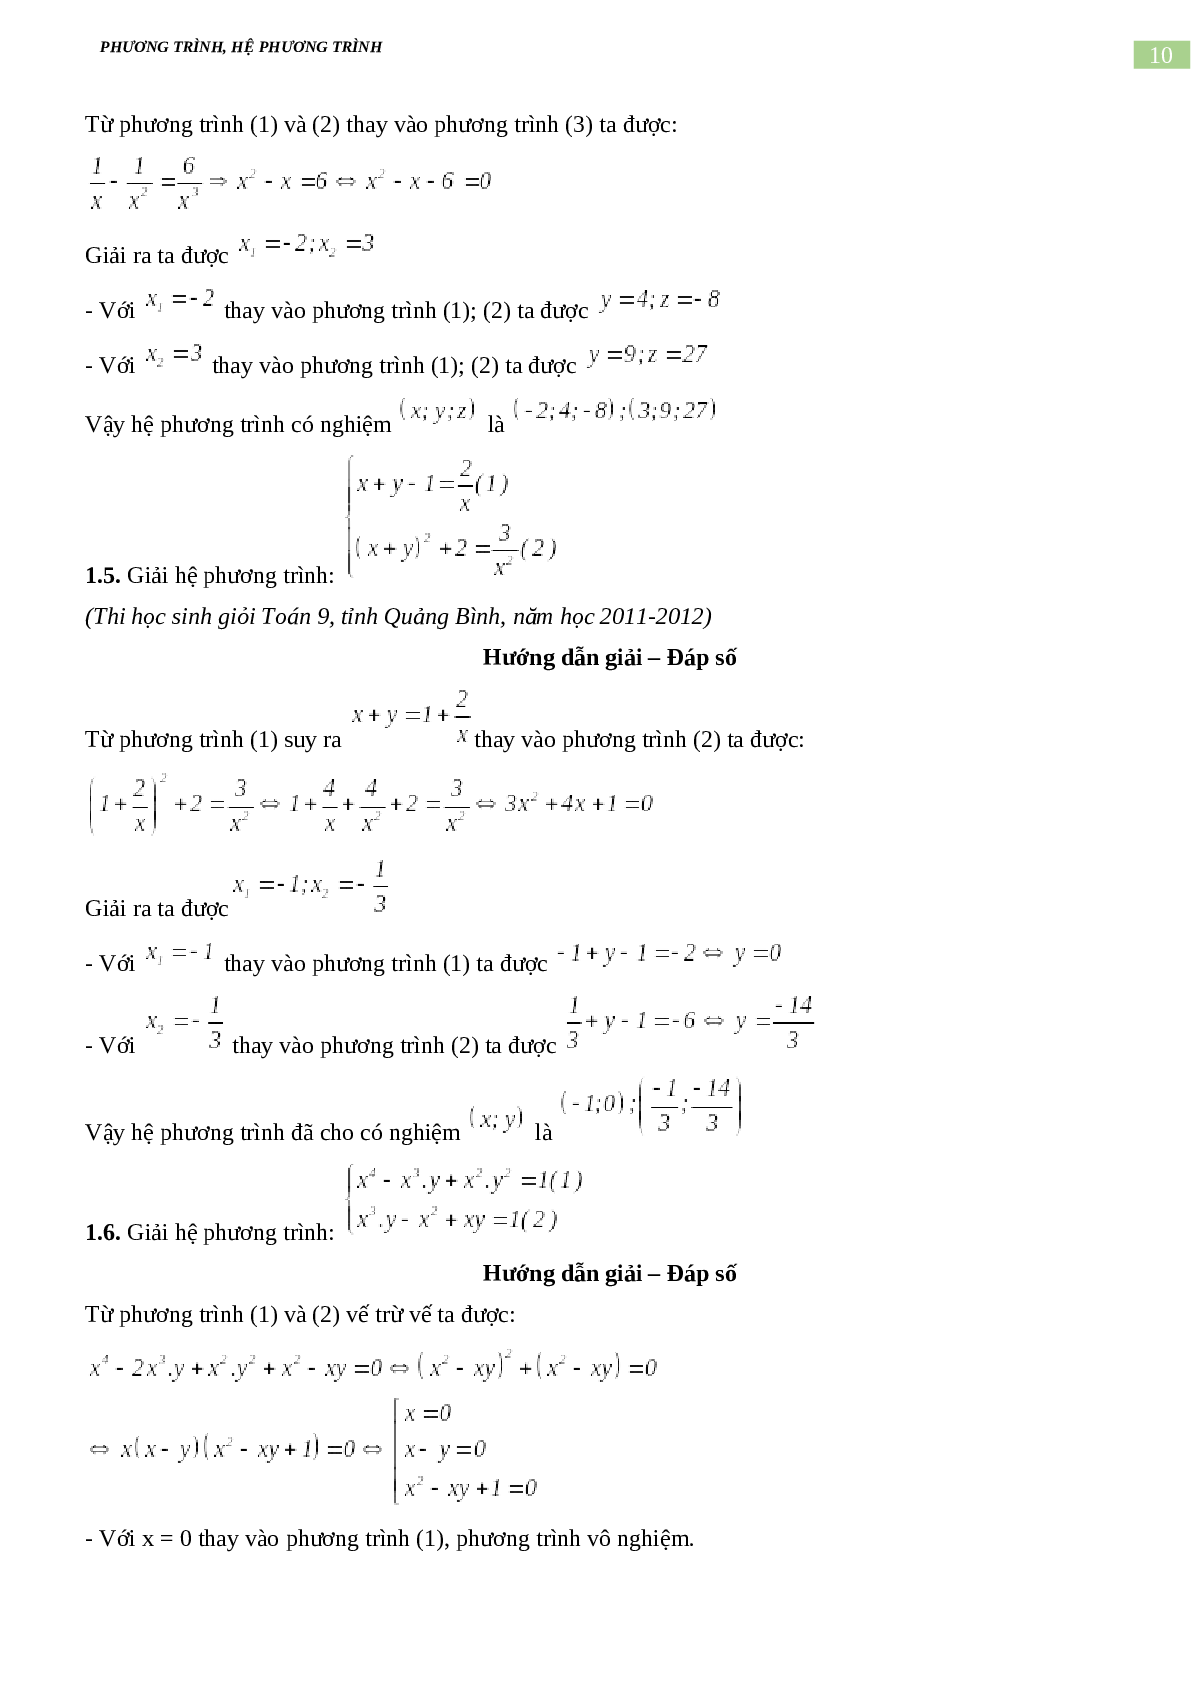 Bài tập về phương trình, hệ phương trình, bất phương trình không mẫu mực có đáp án, chọn lọc (trang 10)